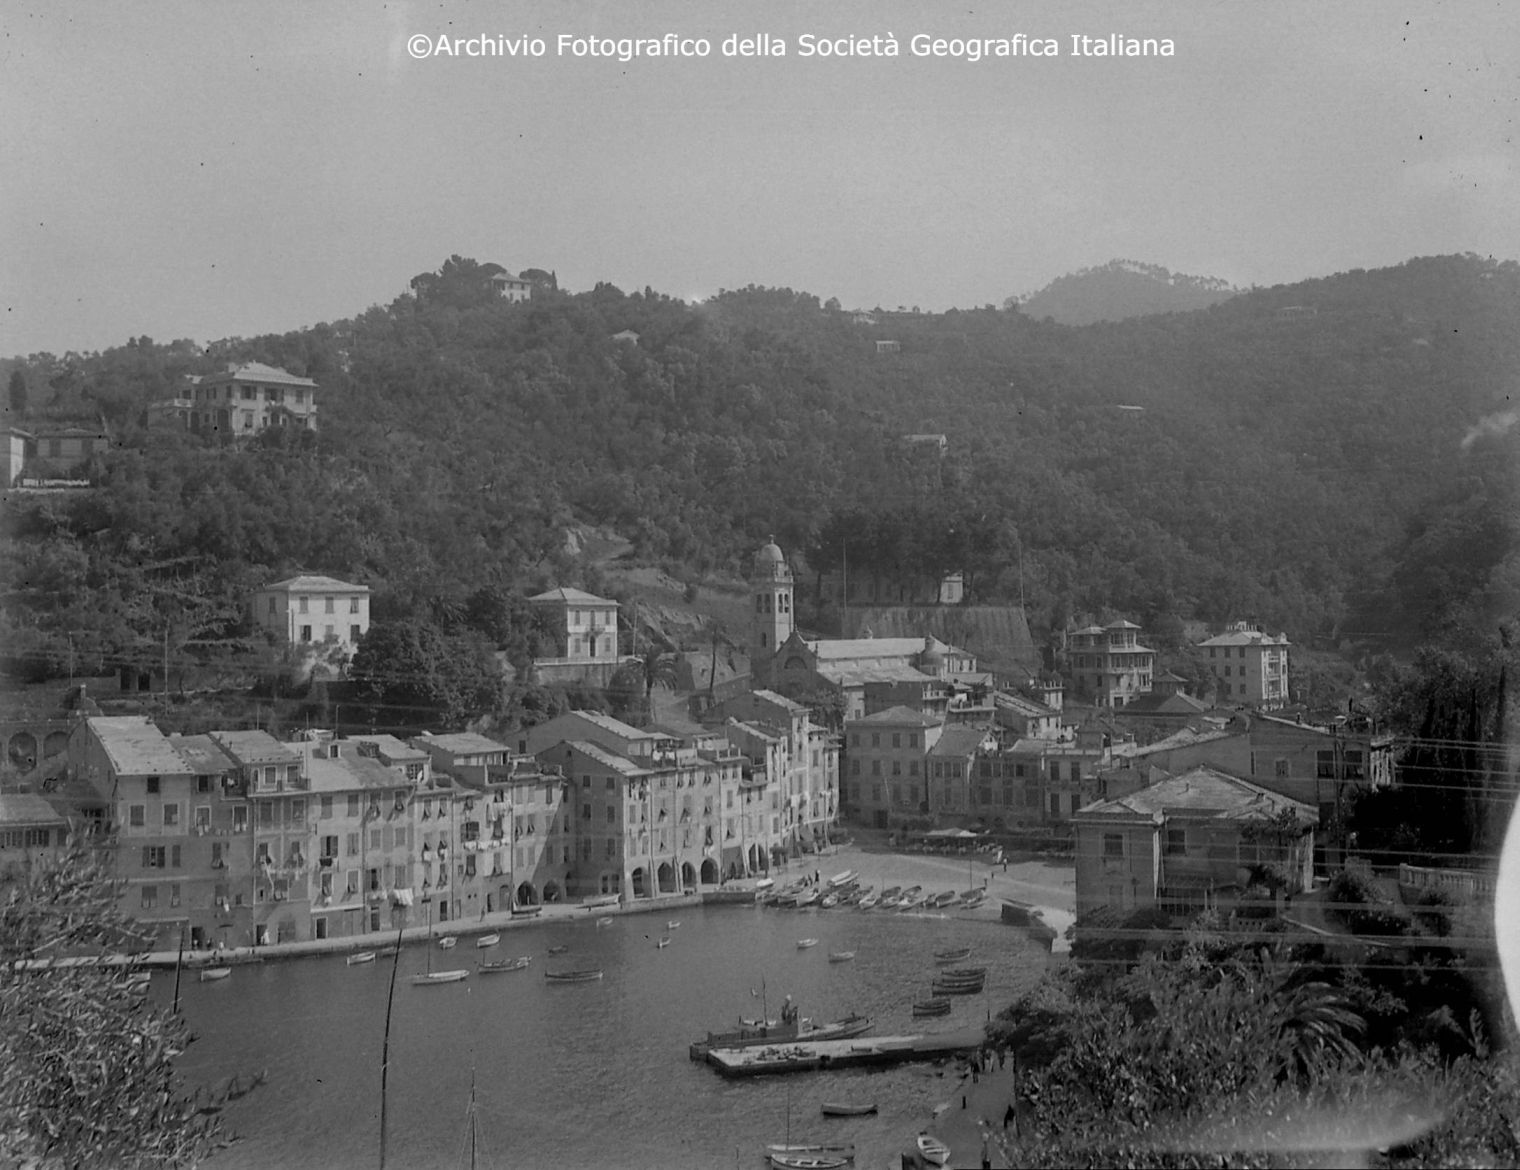 Giotto  Dainelli, La riviera di Levante (Liguria), 1934